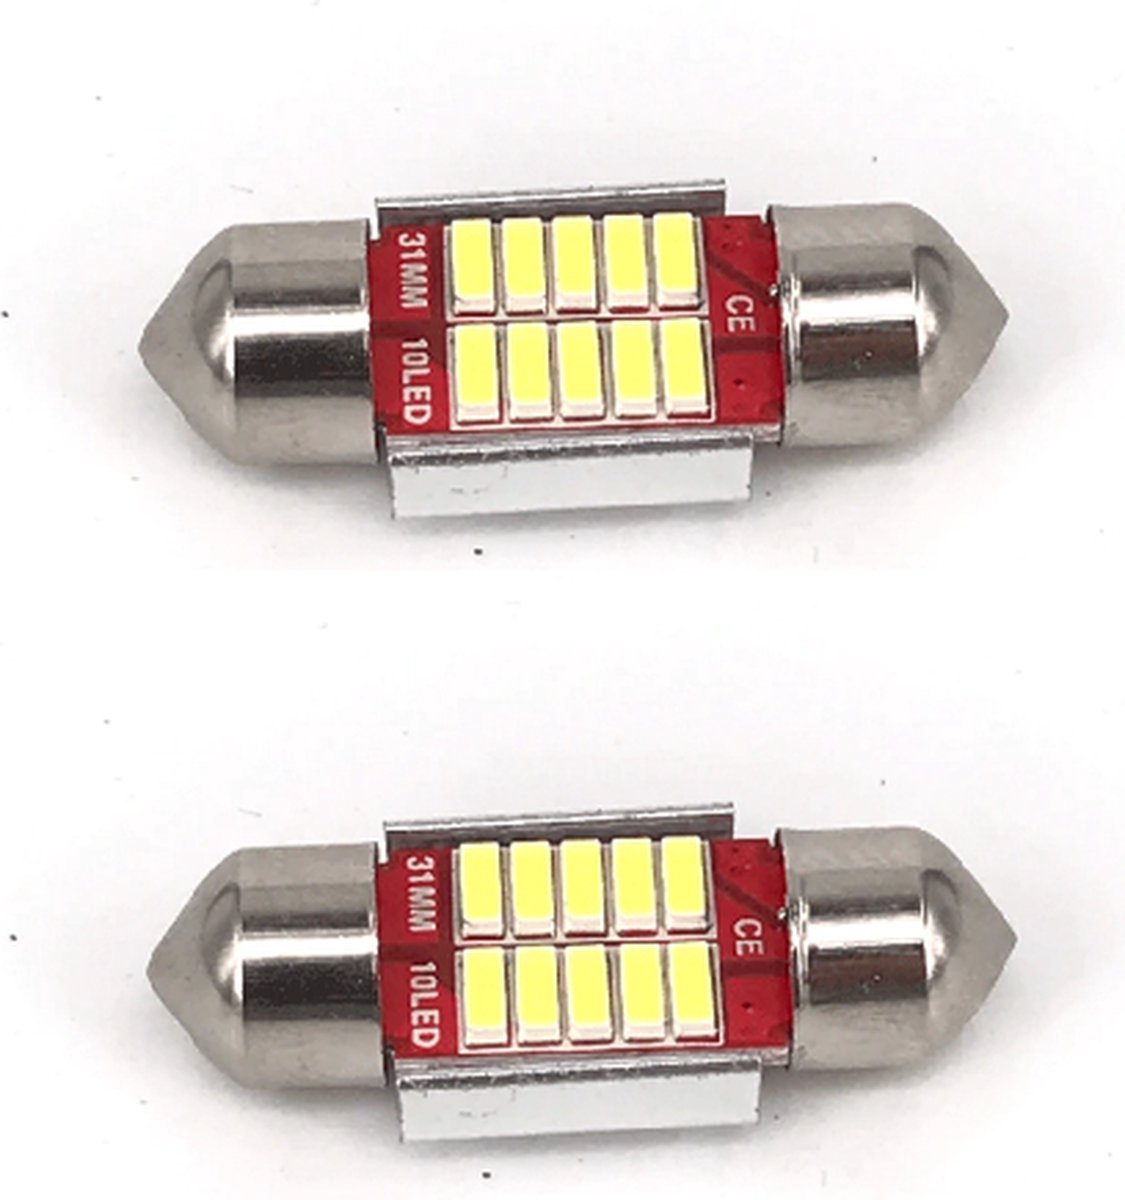 C5W 31mm LED Auto lamp / 2 stuks Festoon LED / 31mm / Interieur lamp / Leeslamp / Interieur auto / Buislamp / Dakhemel verlichting / Kofferbak lamp / Instapverlichting led / Canbus / Voetverlichting / Storingsvrij / Kleur 6000K (Wit) / 12V / 2 stuks